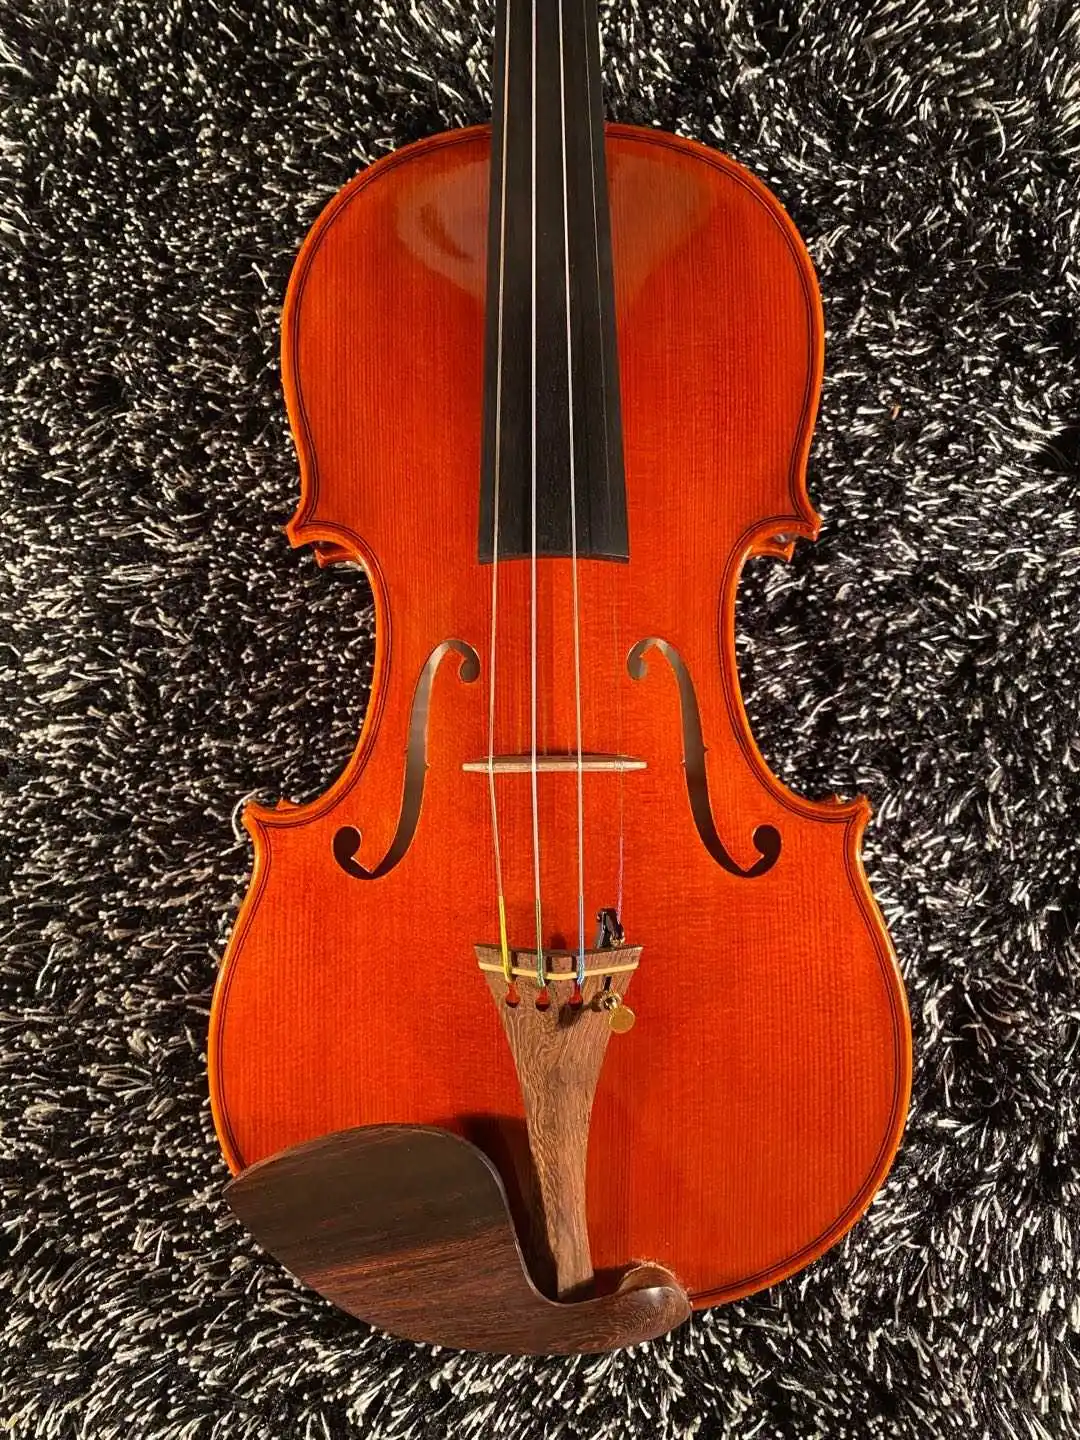 Итальянский топовый масляный лак! Отличная красная скрипка Stradivari 1715 4/4 3/4! Мастер тон! Аксессуары для фотоканифоли